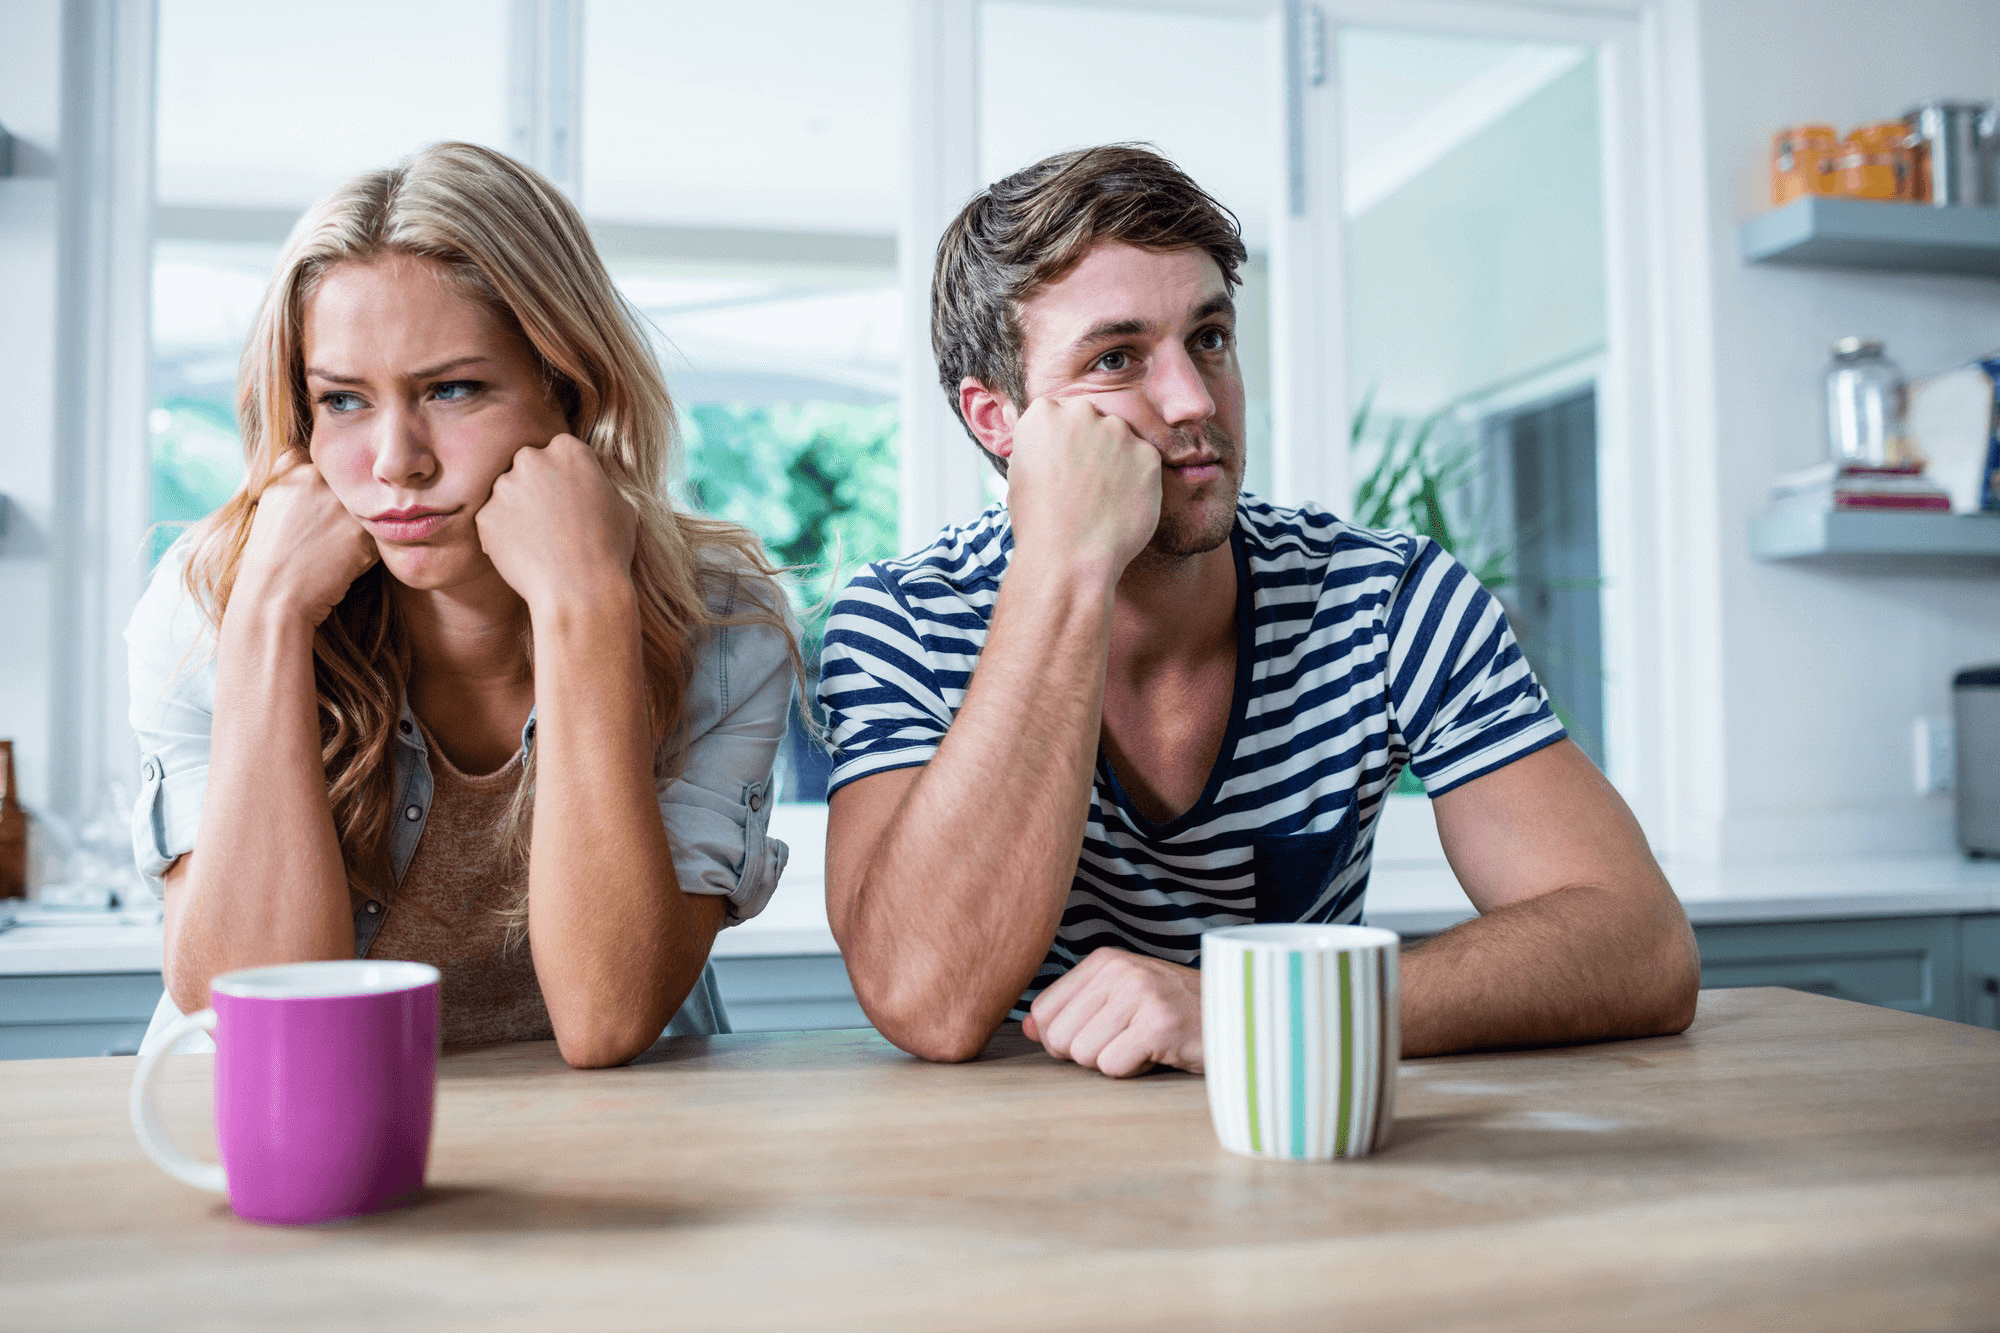 15 вредных привычек, которые приводят к беспорядку в доме (советы, как их избежать)